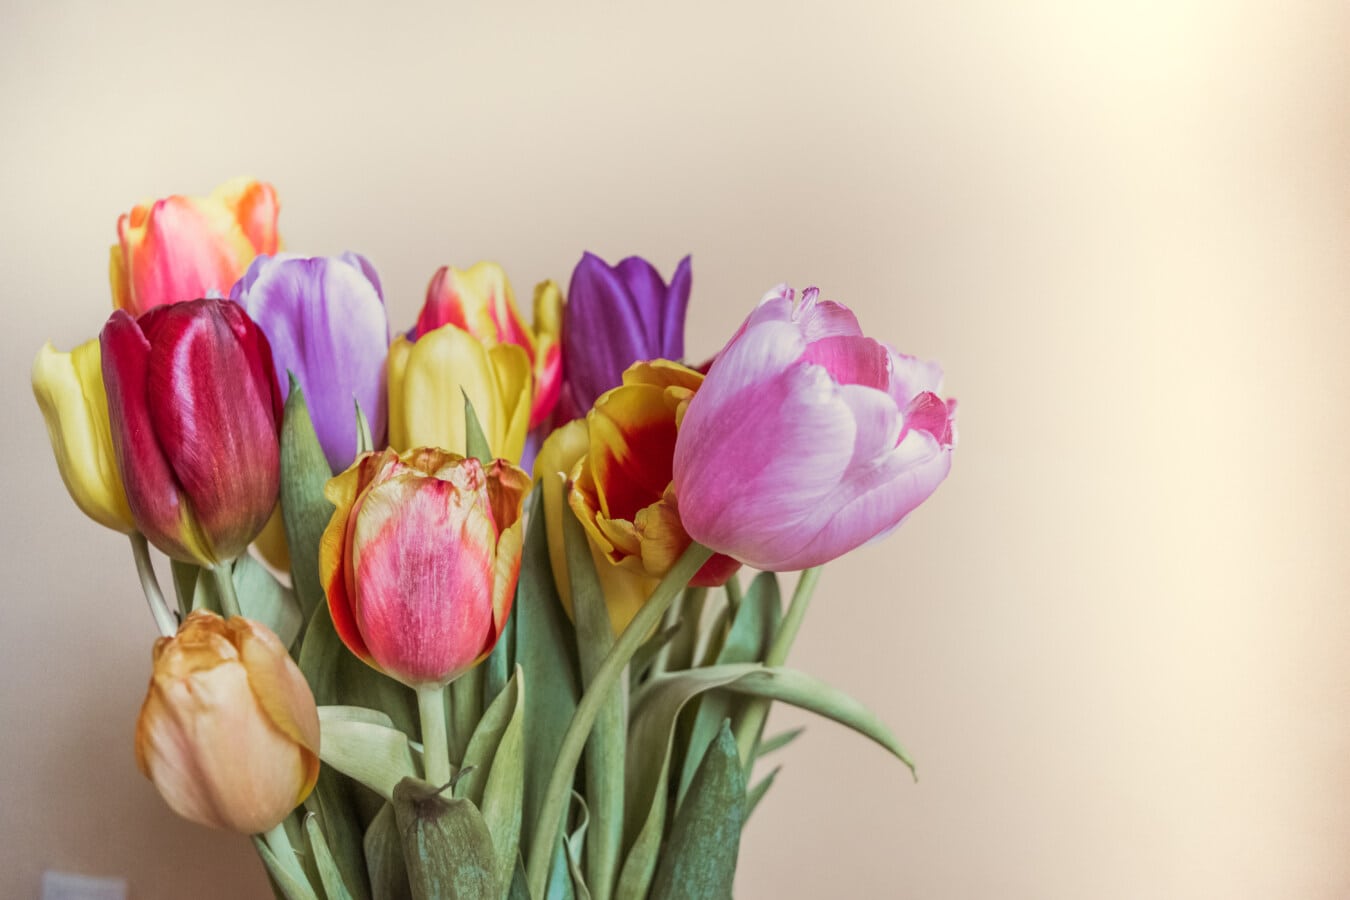 Tulip, tunas, kuncup bunga, warna-warni, batang, karangan bunga, segar, elegan, bunga, musiman